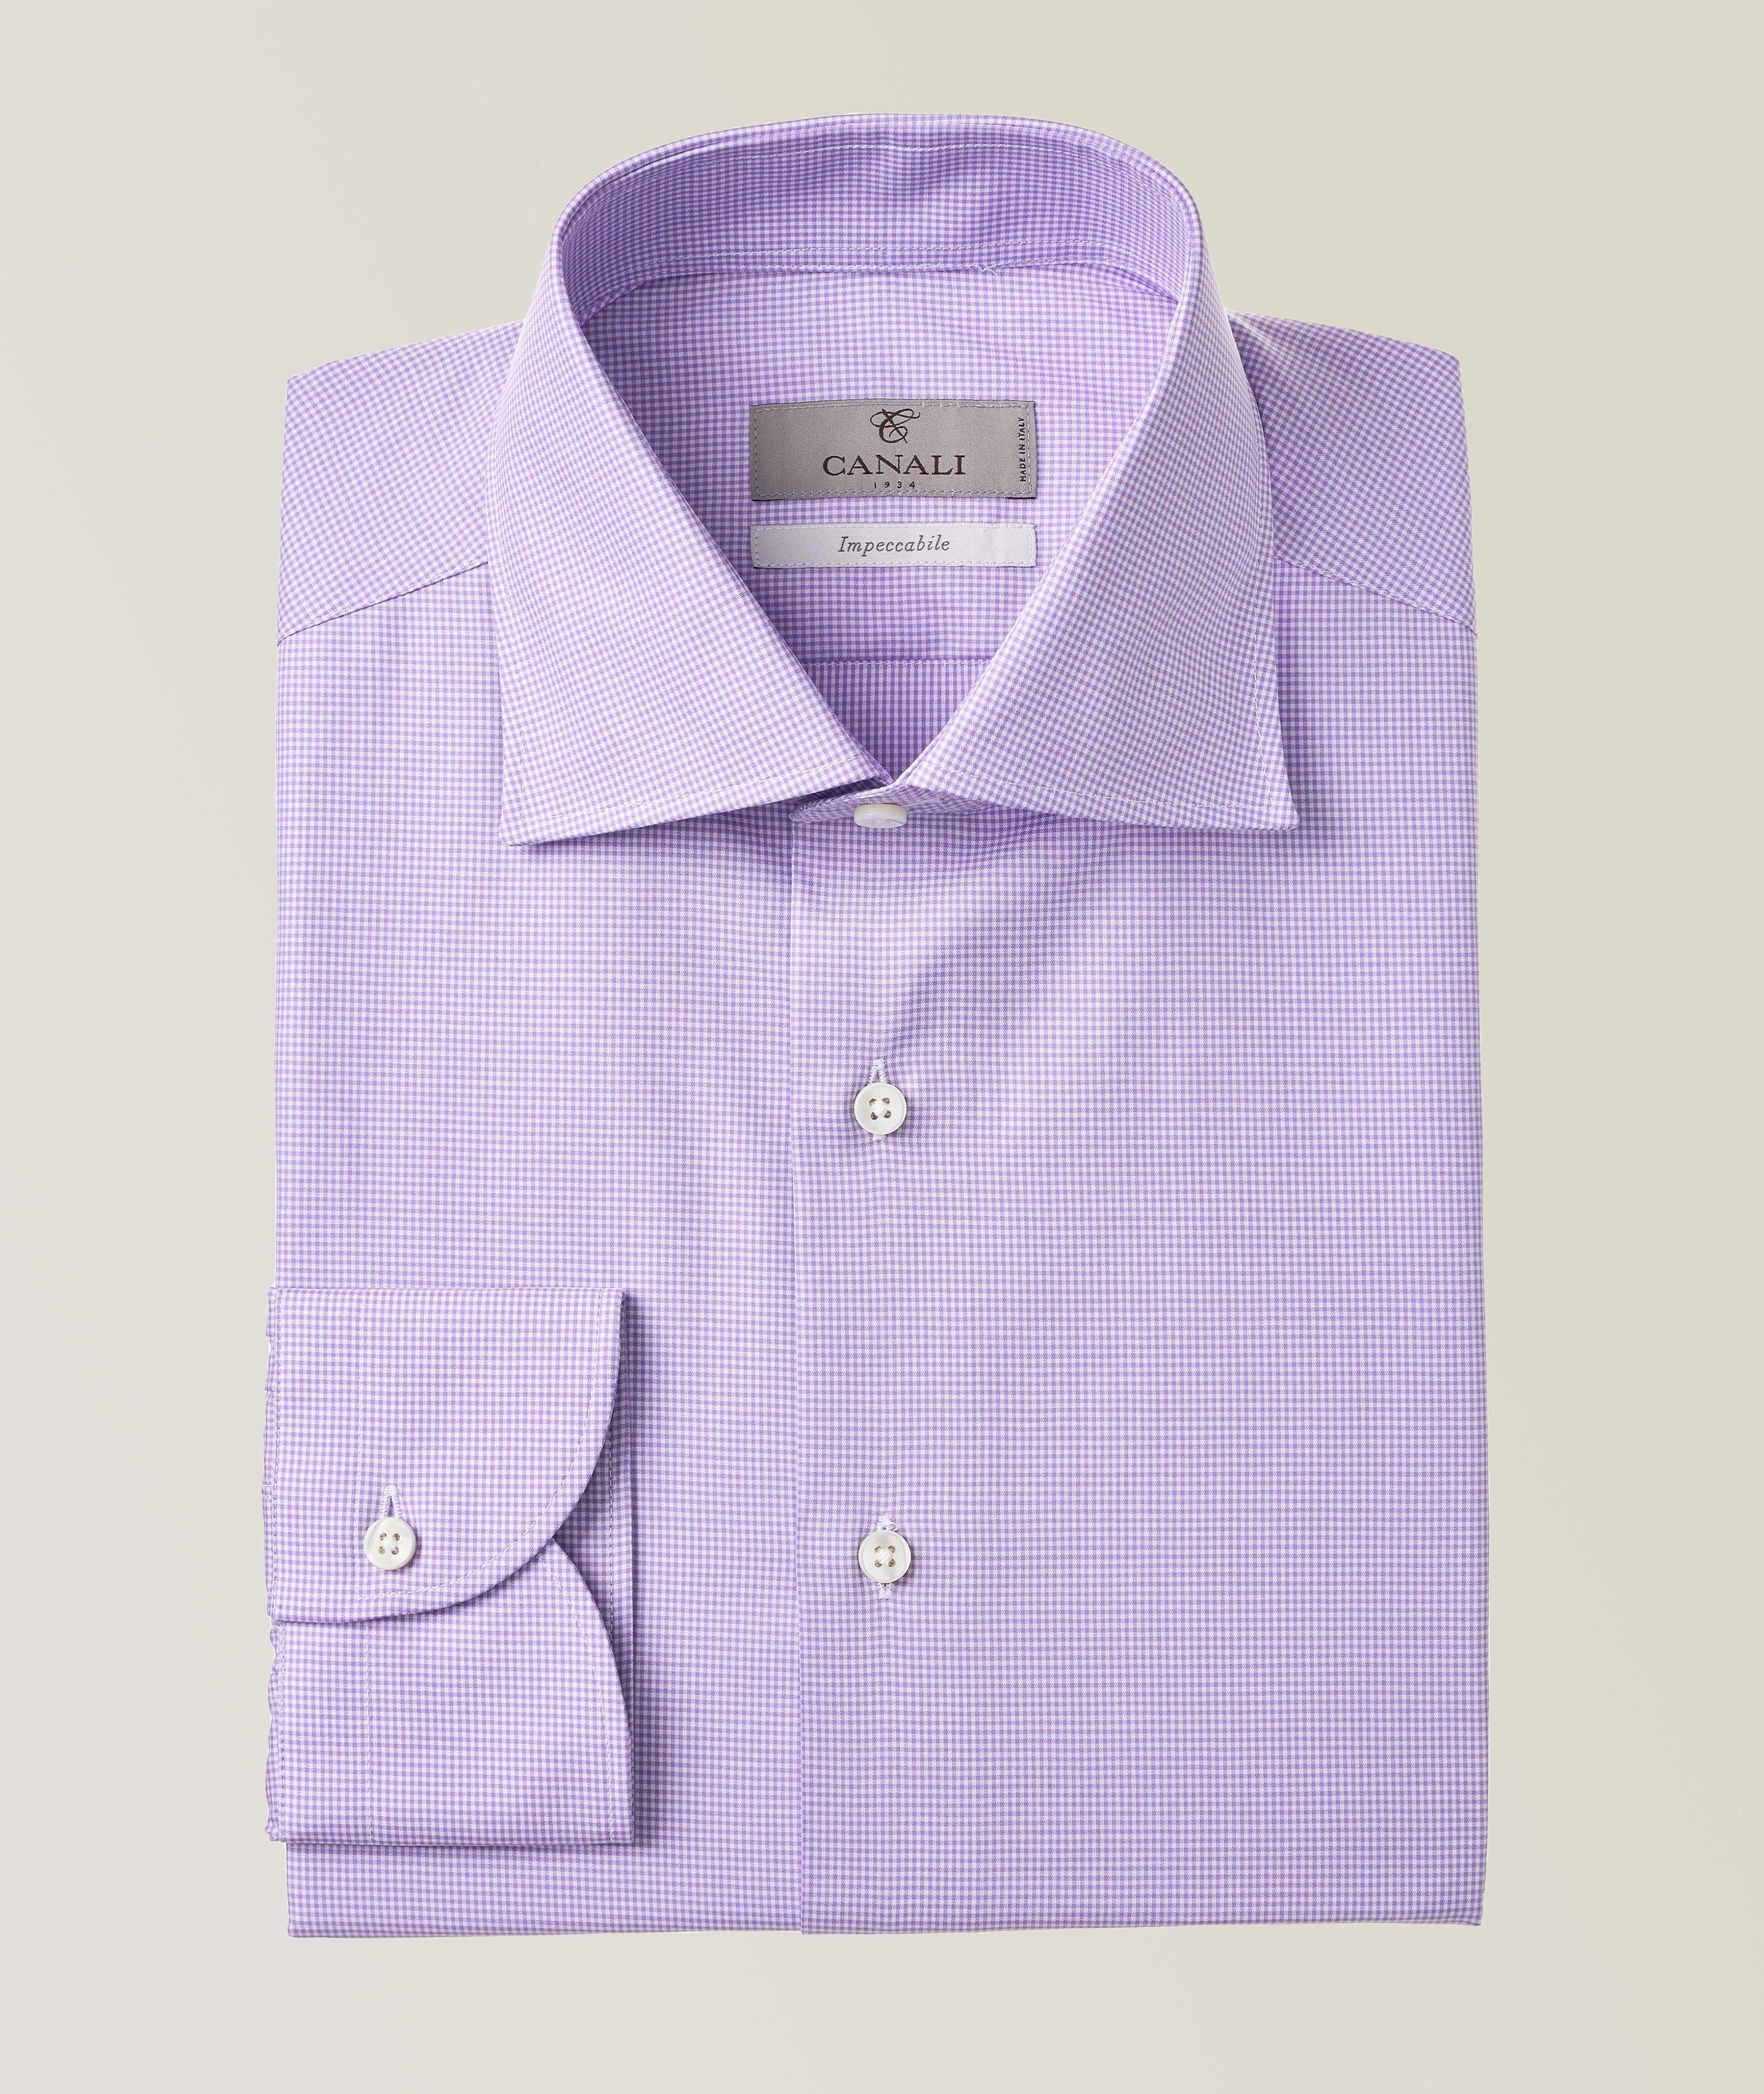 Chemise habillée en tissu Impeccabile à motif quadrillé de coupe amincie image 0